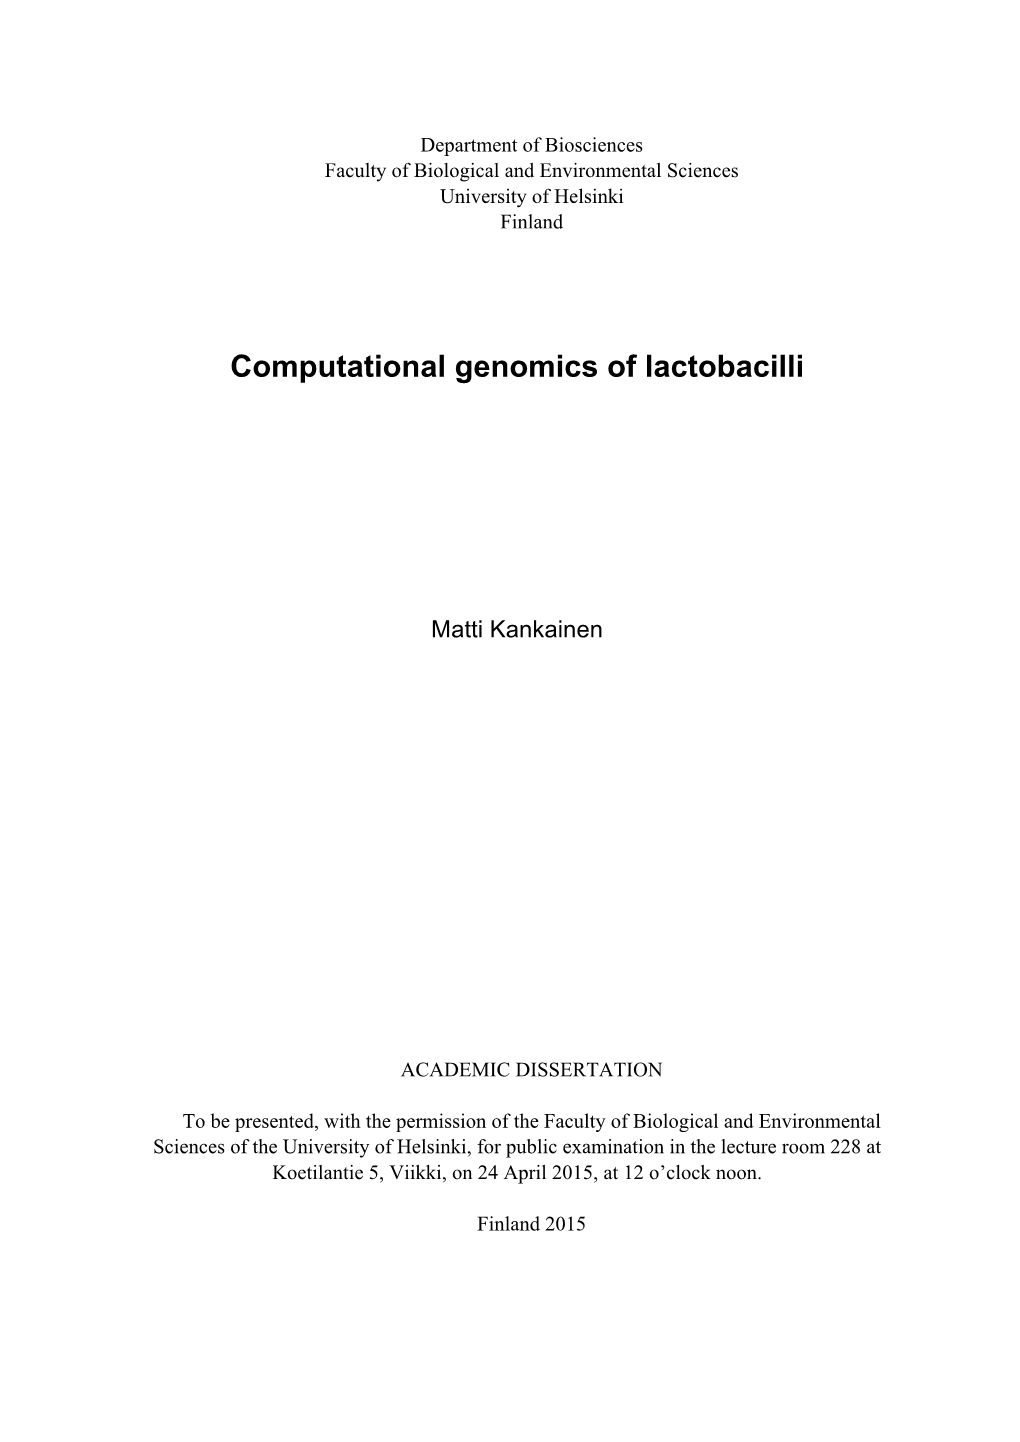 Computational Genomics of Lactobacilli